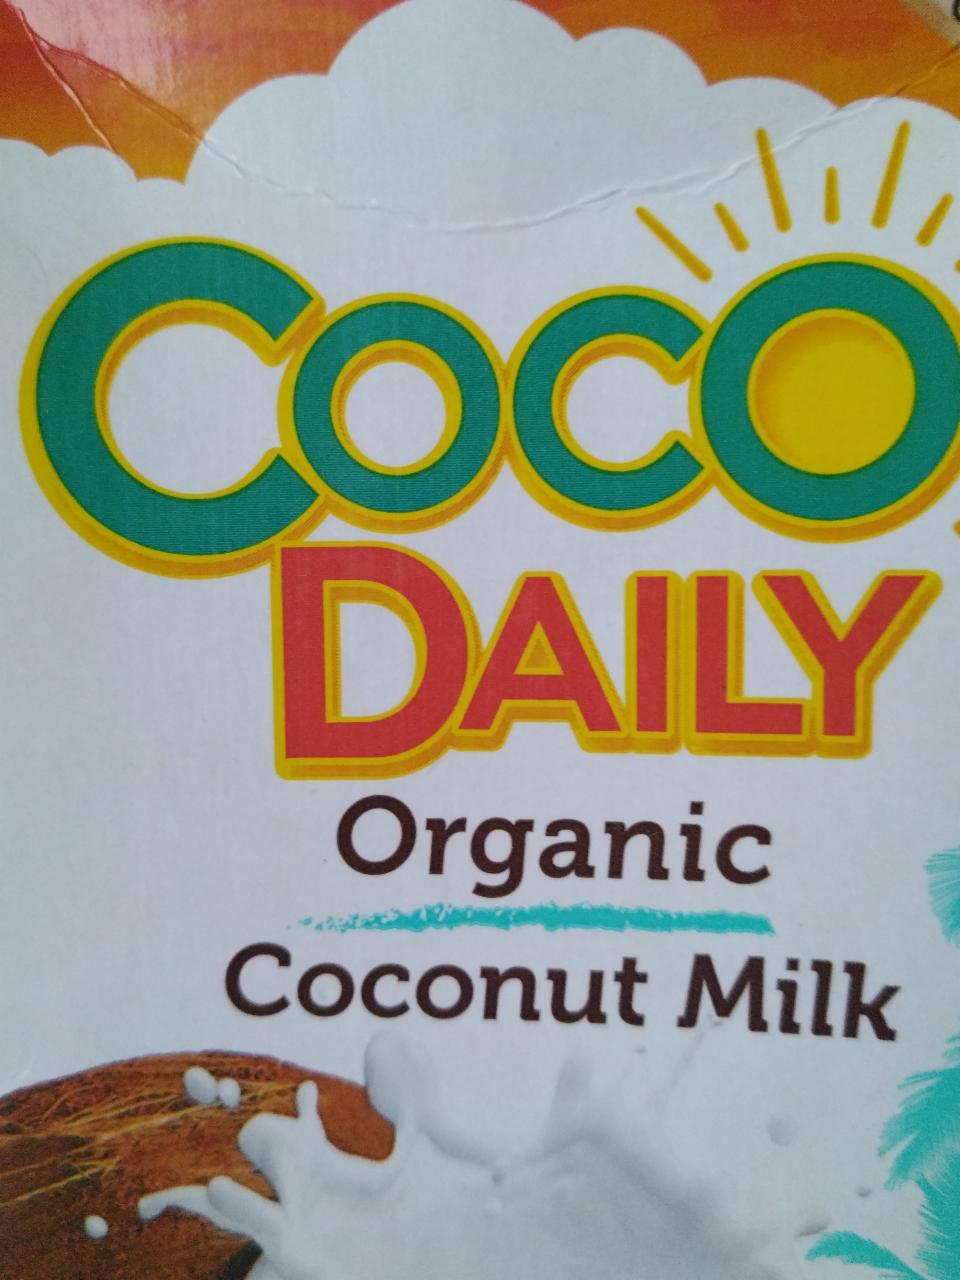 Фото - Органическое кокосовое молоко Coco Daily